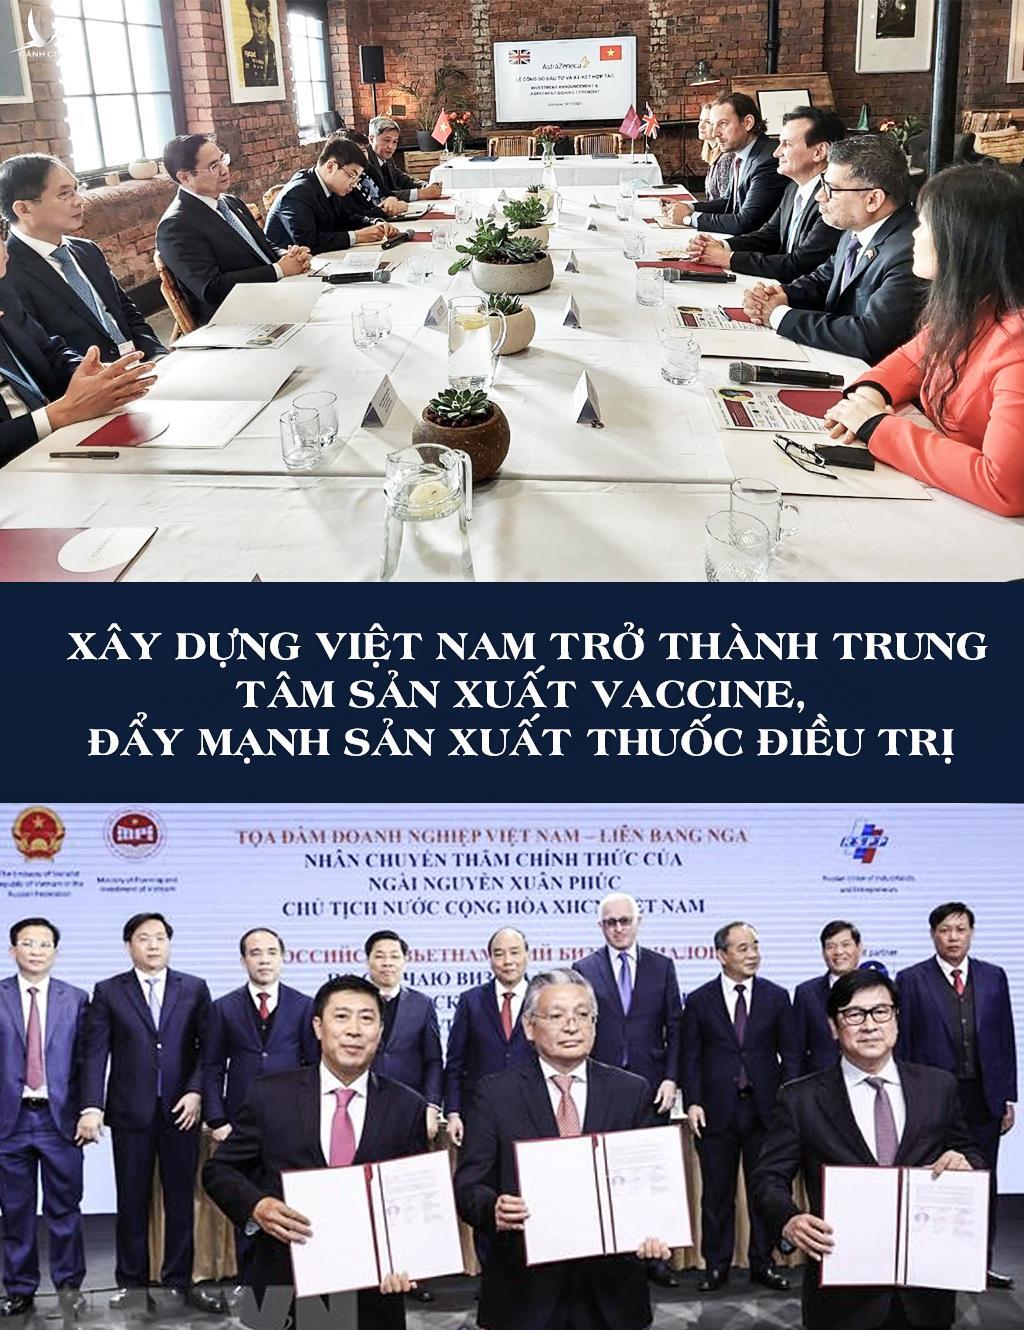 “Cây tre Việt Nam” trong đường lối ngoại giao